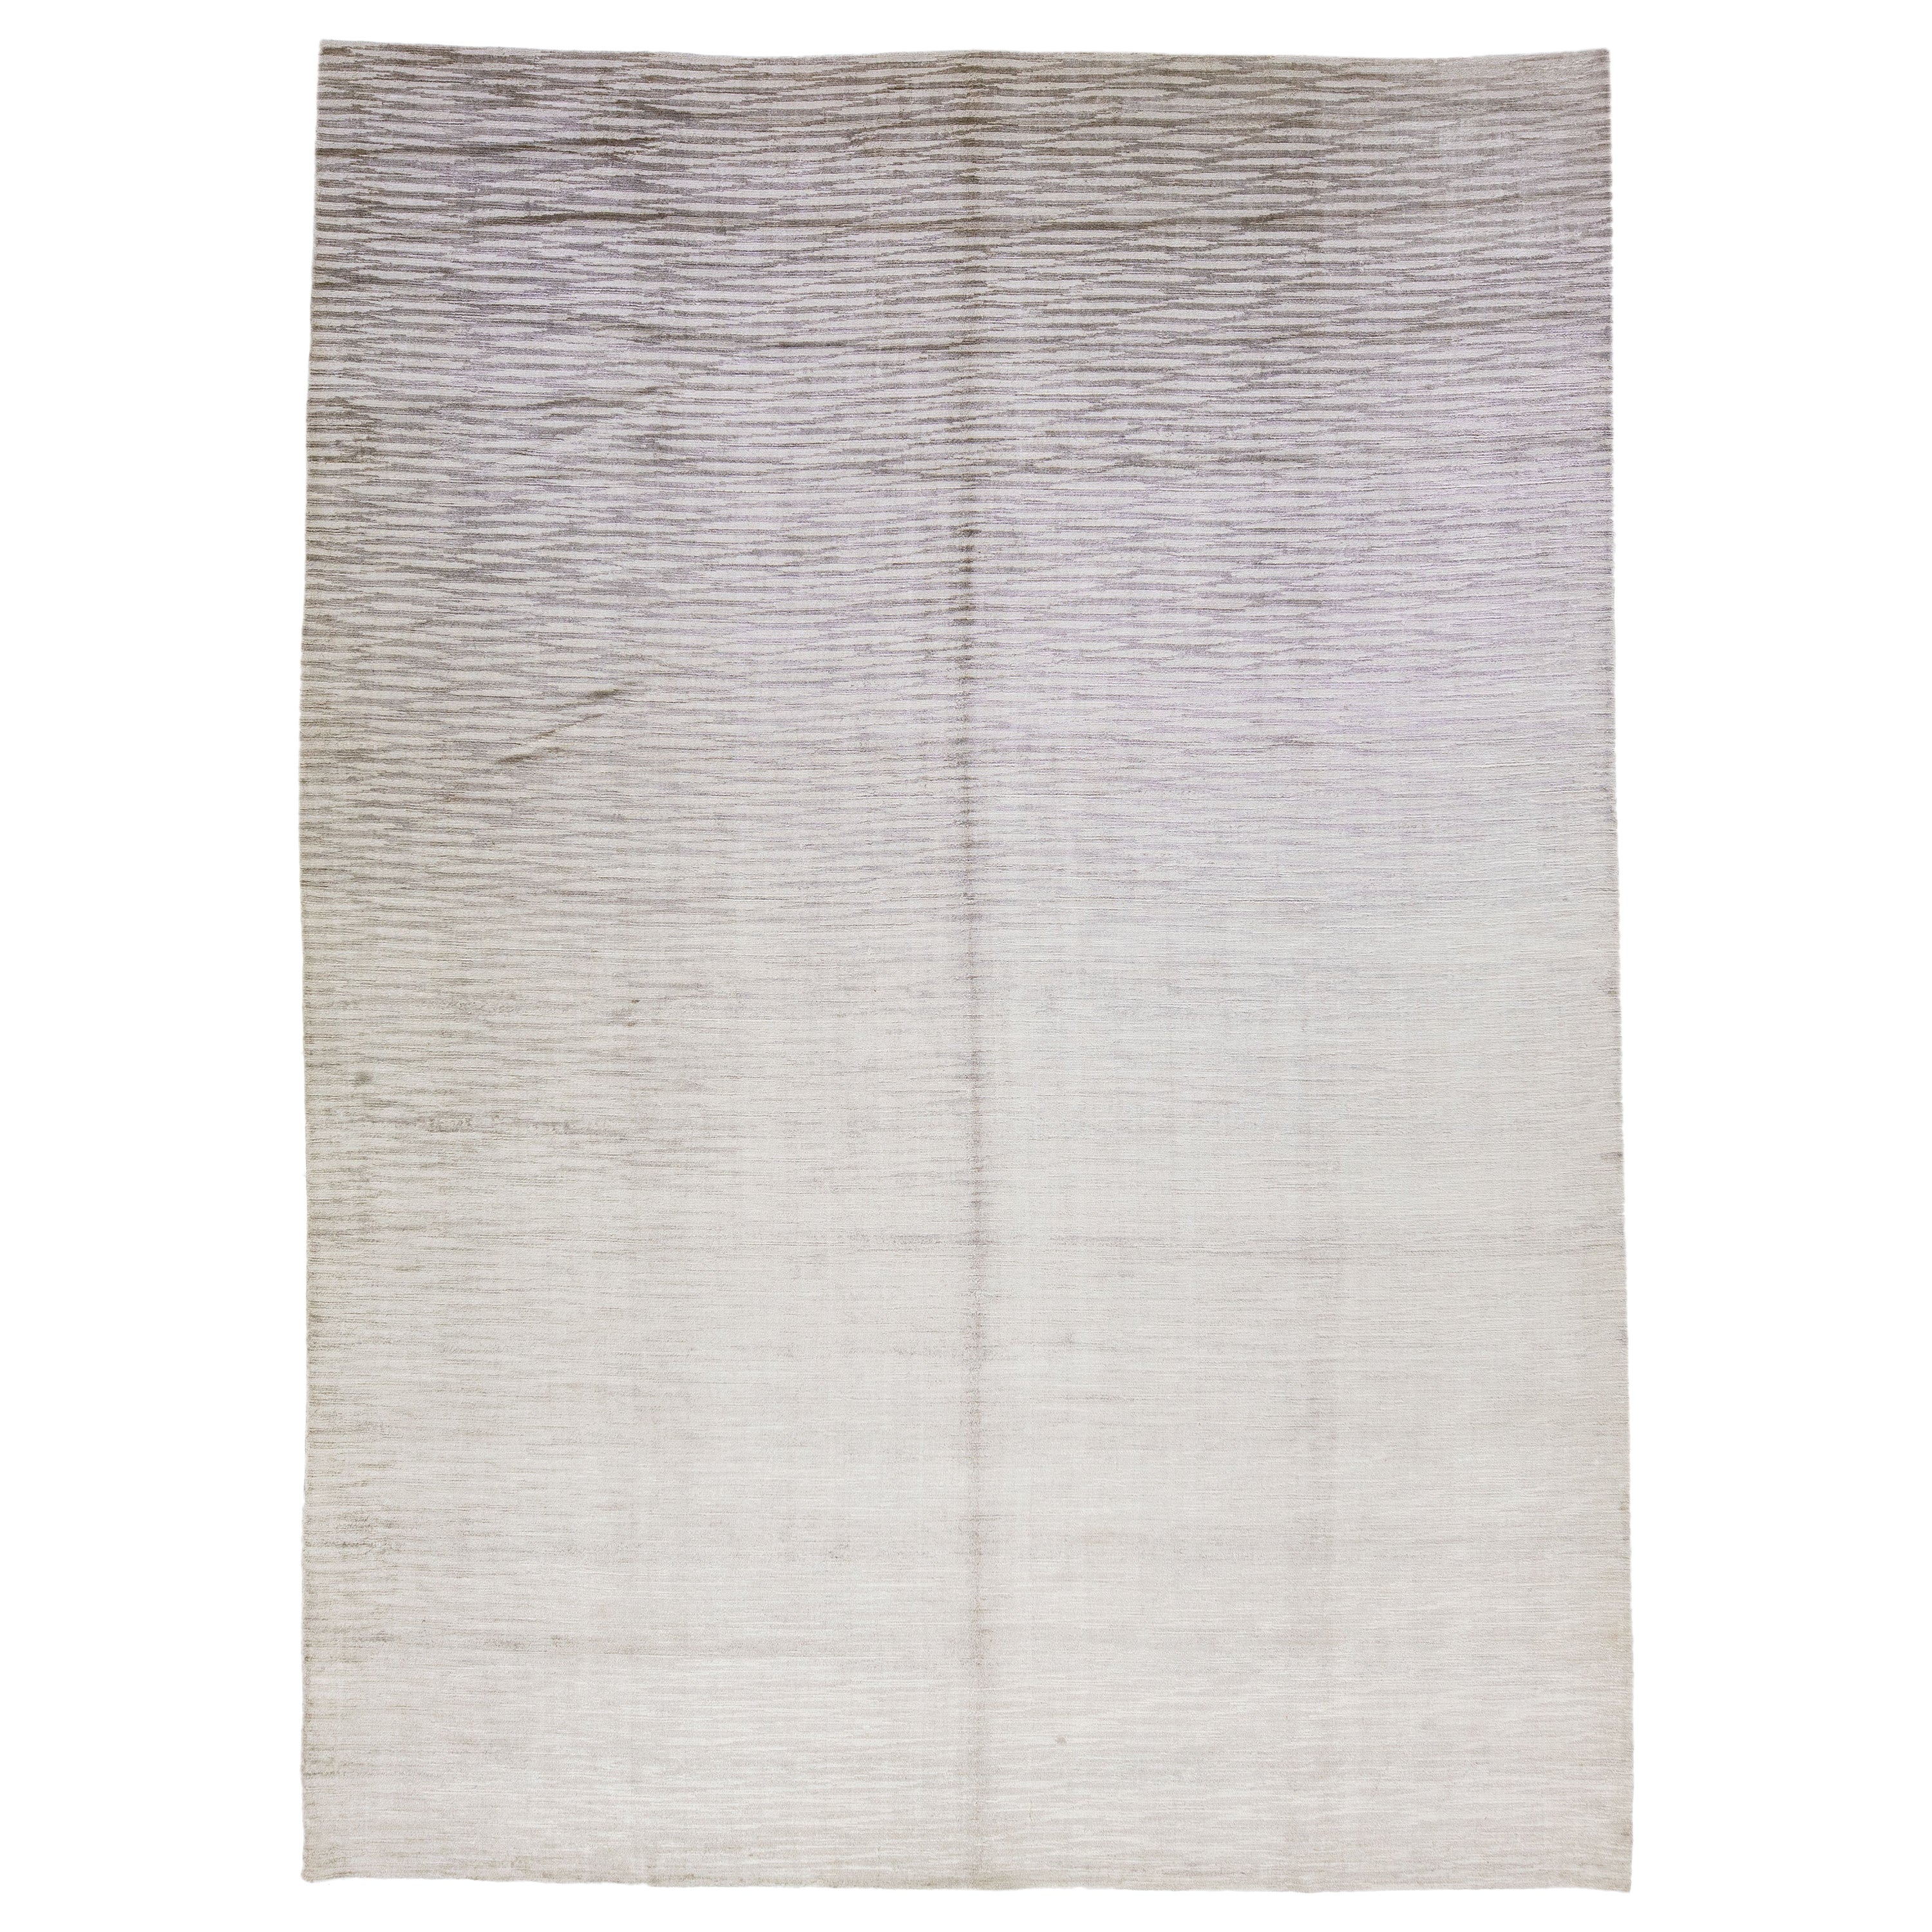 Grauer Teppich aus Wolle und Seide, handgefertigt mit abstraktem Muster